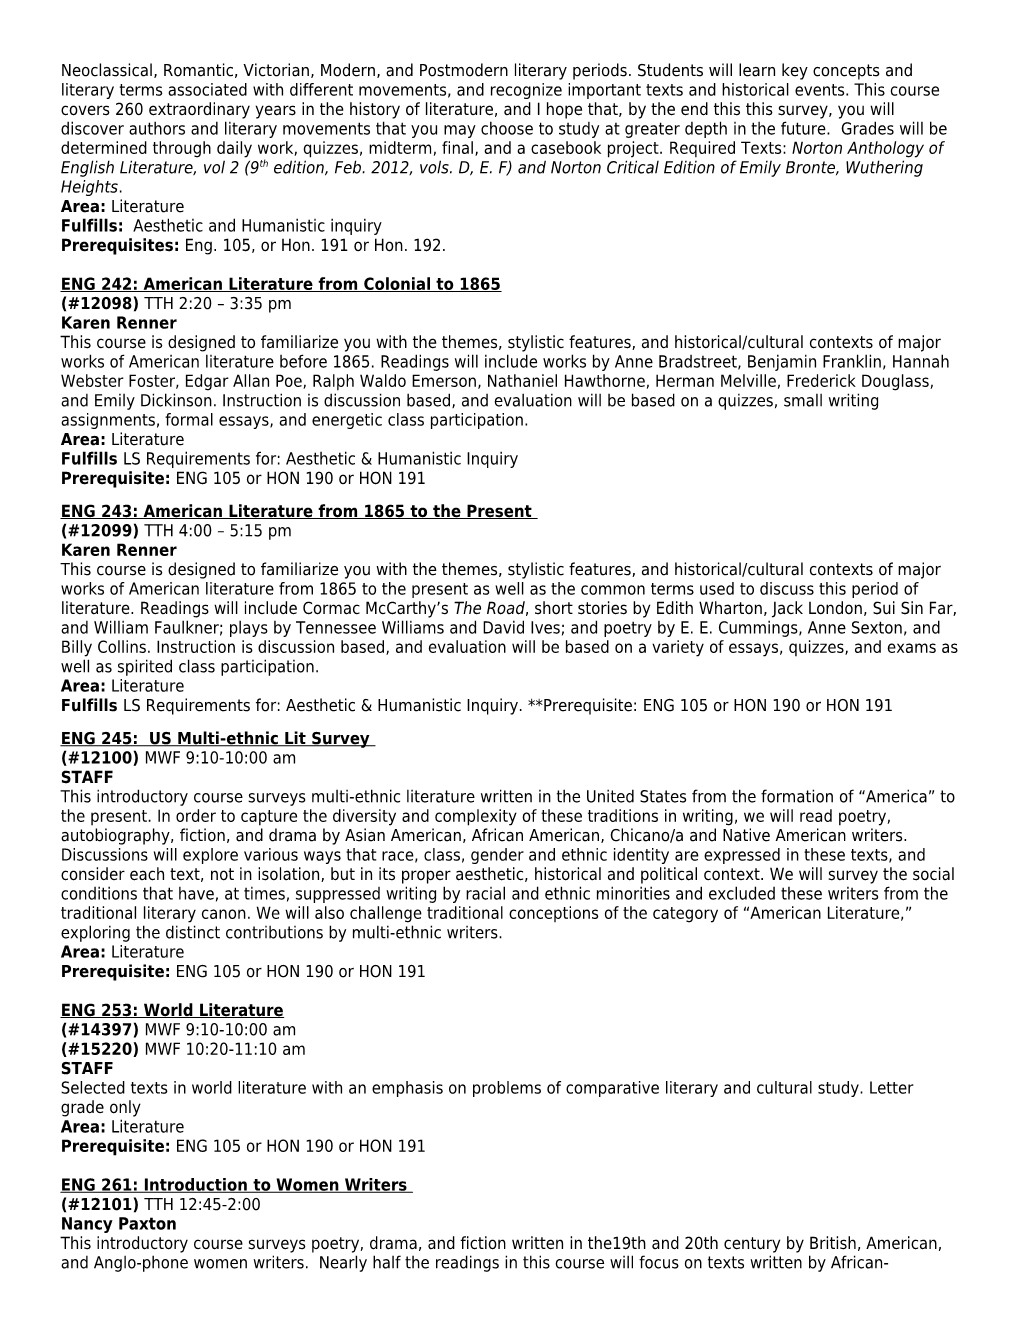 Fall 2014 Undergraduate Course Descriptions